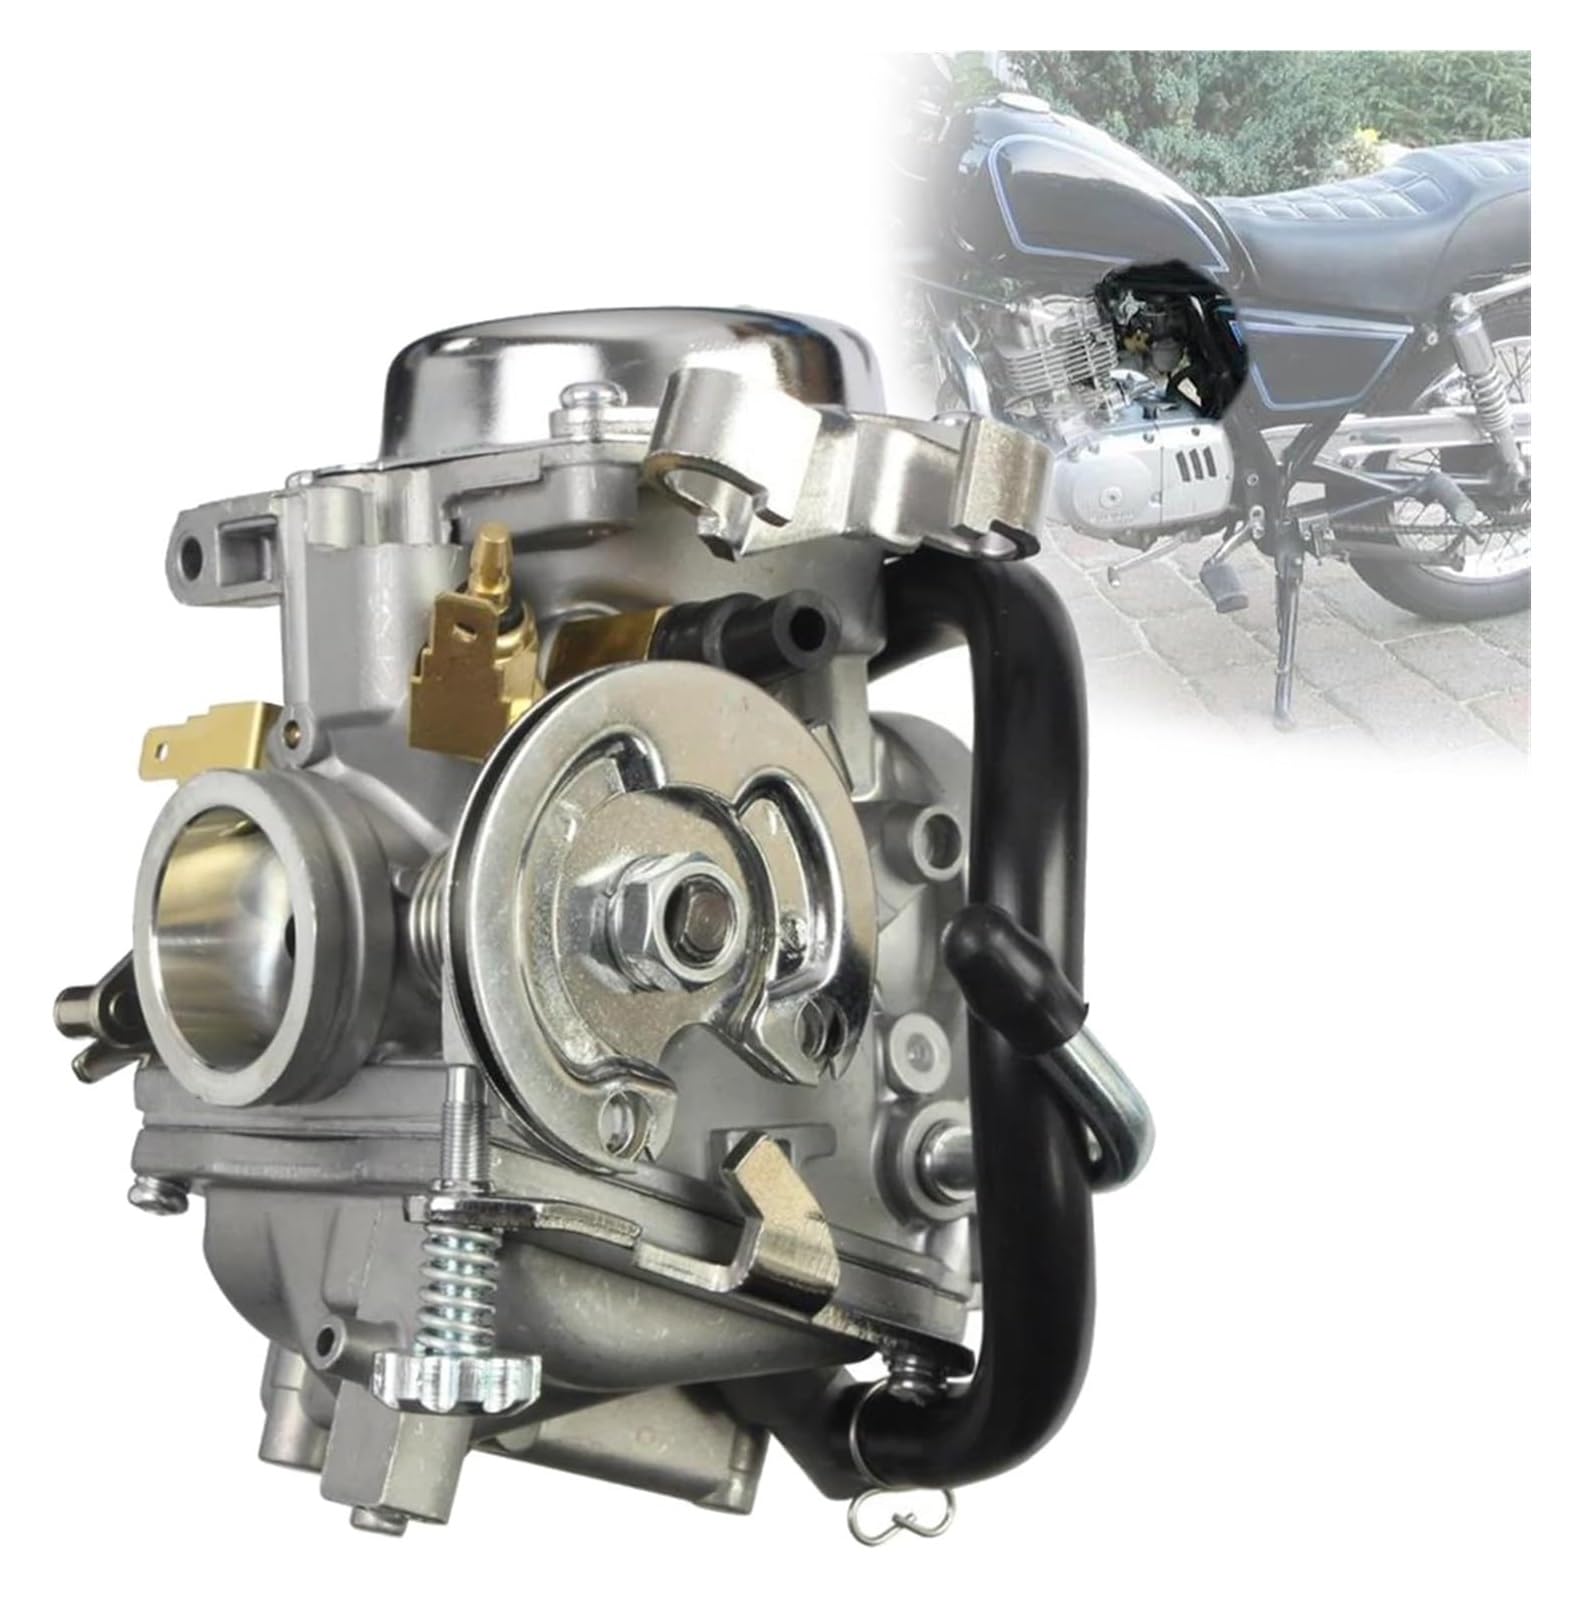 Carburetor Carb Für Y&amaha VSTAR250 V STAR 250 2008 2009 2010 2013 2014 2015 2019 2020 Zubehör XV250 26mm Carb Motorrad Vergaser Assy von SYUBTGAN